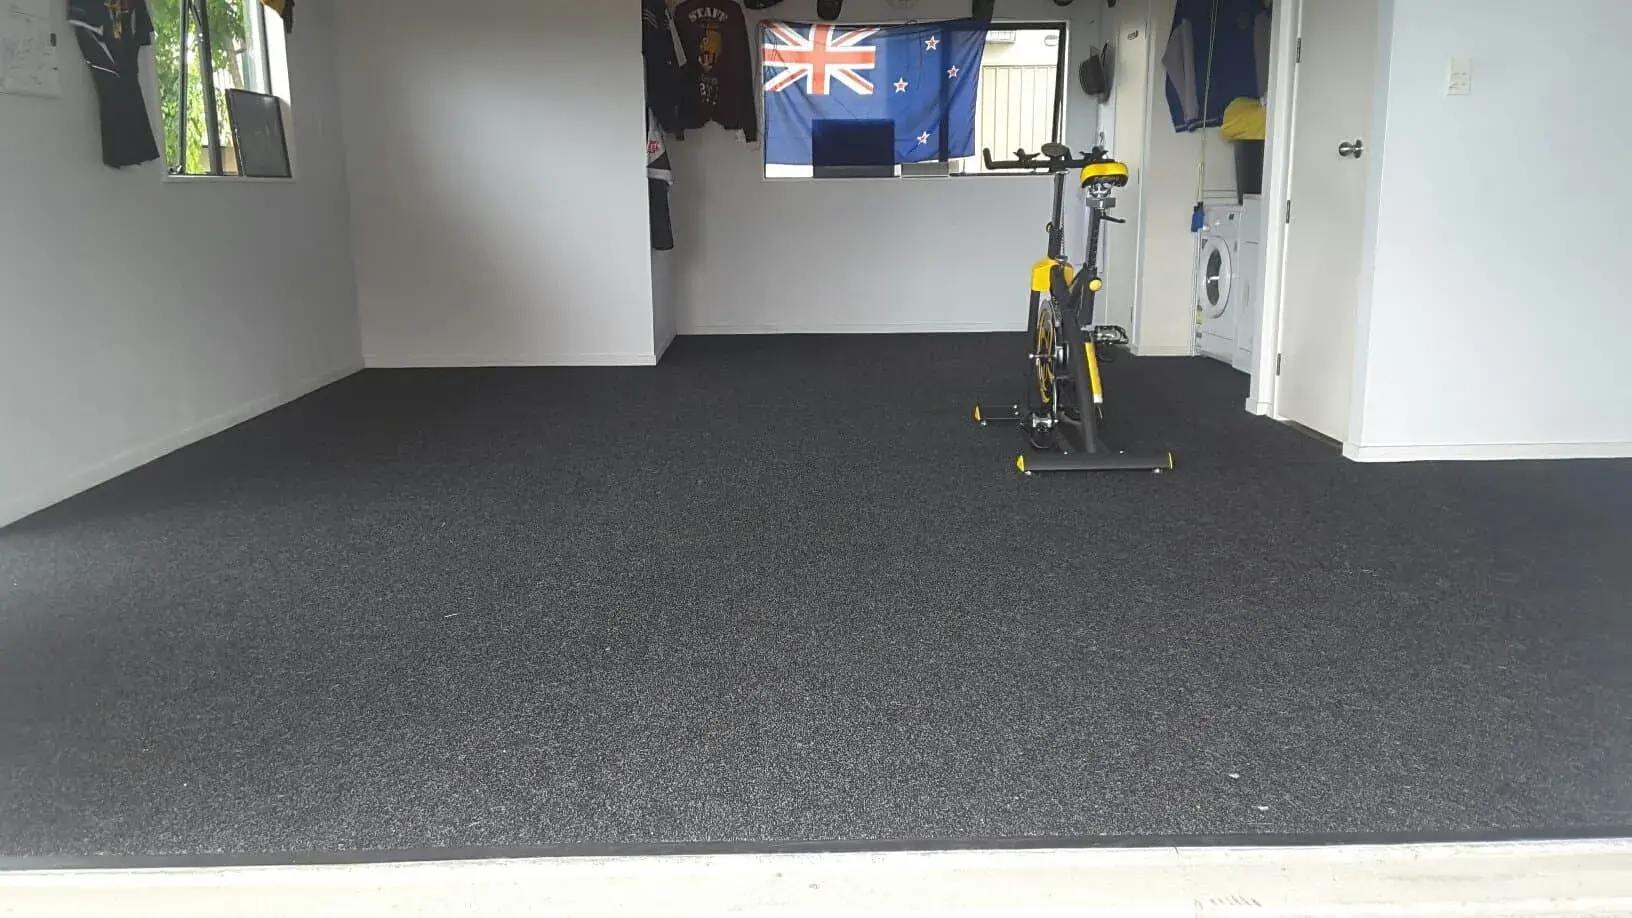 Affordable Garage Carpet  NZ Garage Flooring Specialist